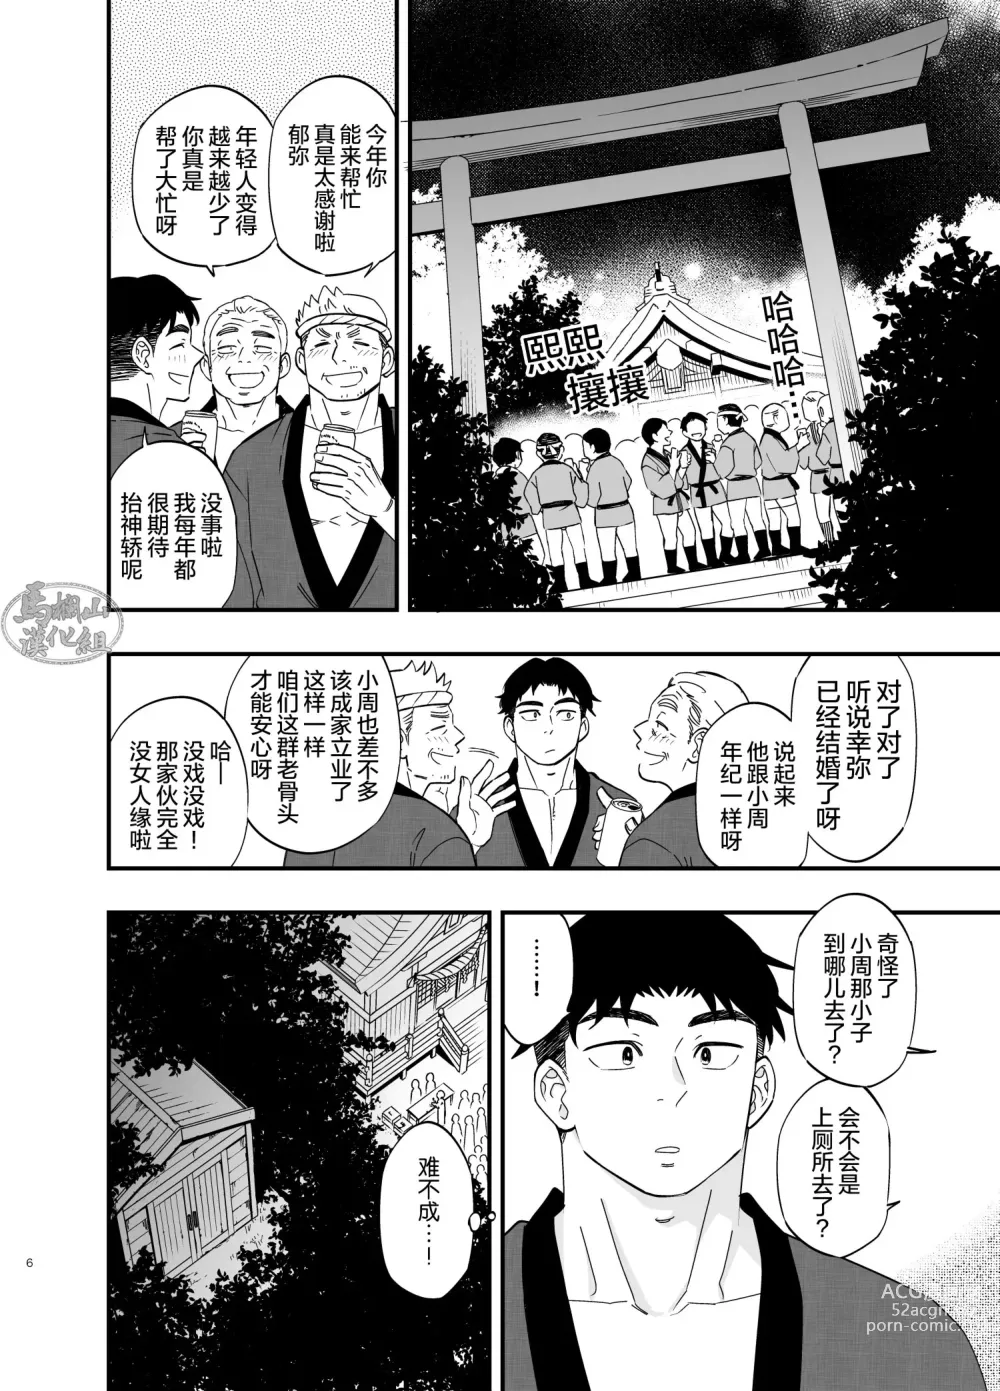 Page 7 of manga 穴